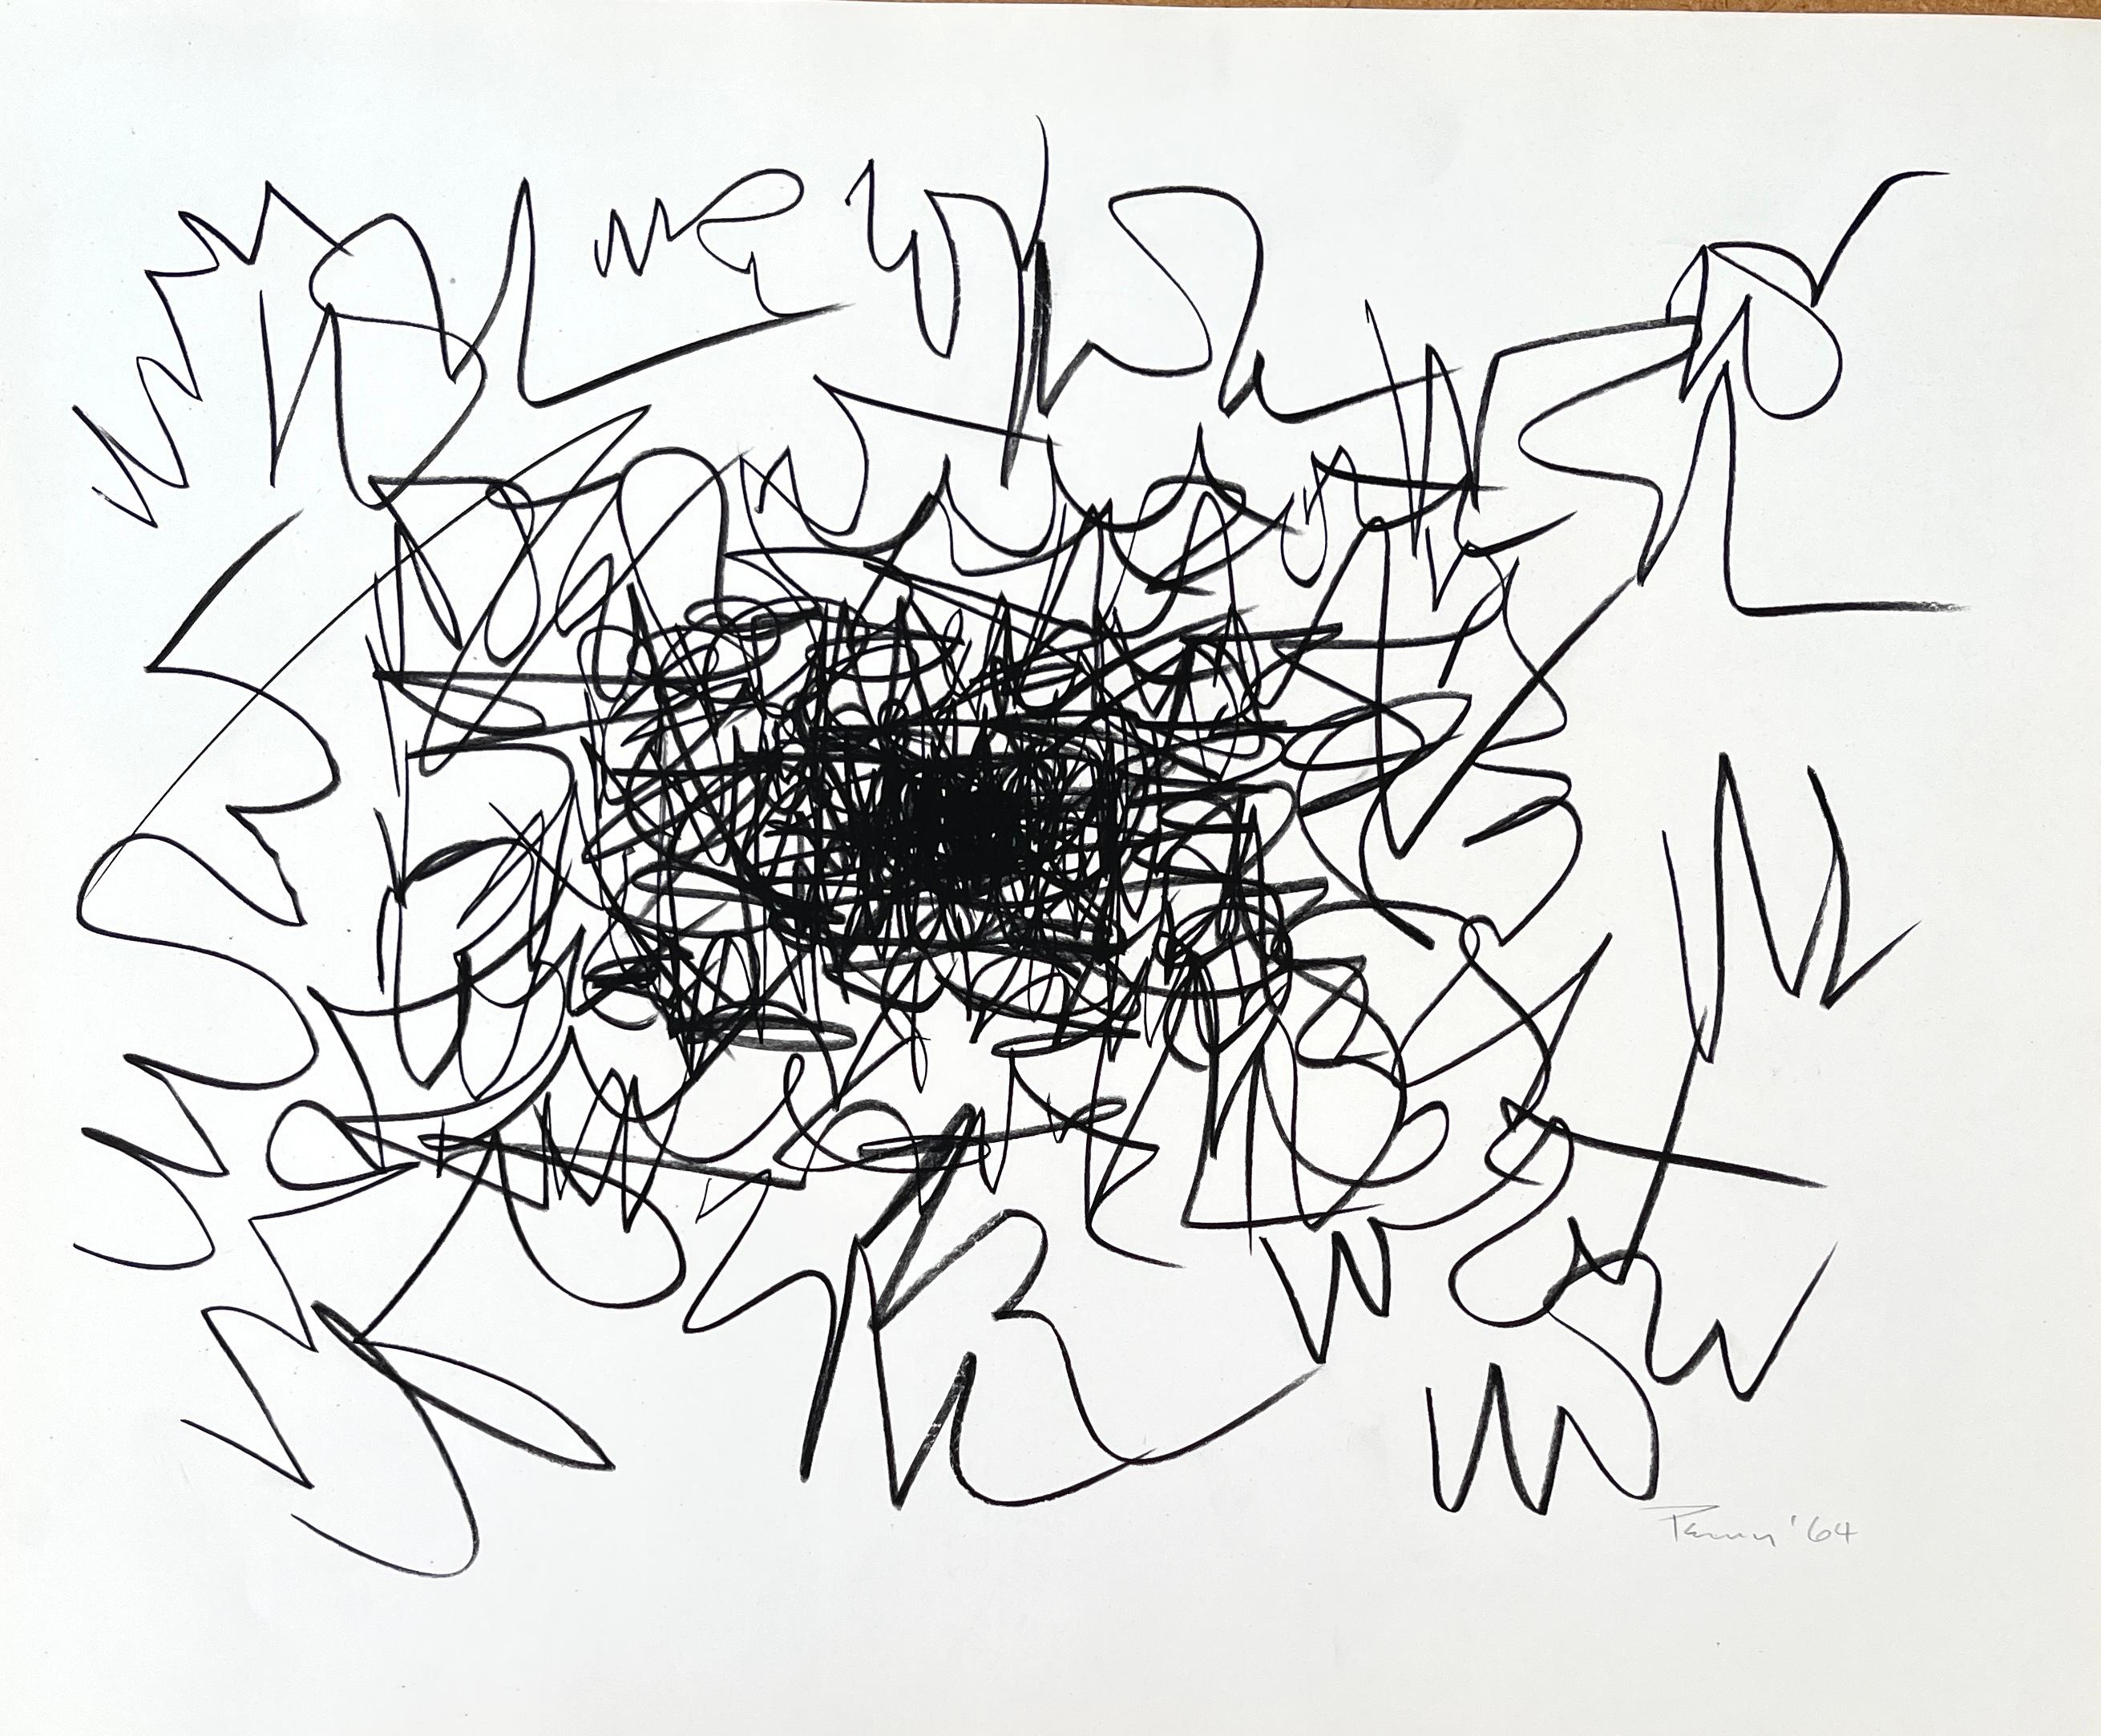 Originalabstrakt, signiert und datiert von Aubrey Penny.

Aubrey Penny (Amerikaner, 1917-2000) war ein innovativer abstrakter Künstler aus Kalifornien, der mit einer Vielzahl von Medien arbeitete. Als Besitzer der No-os Galerie am La Cienega